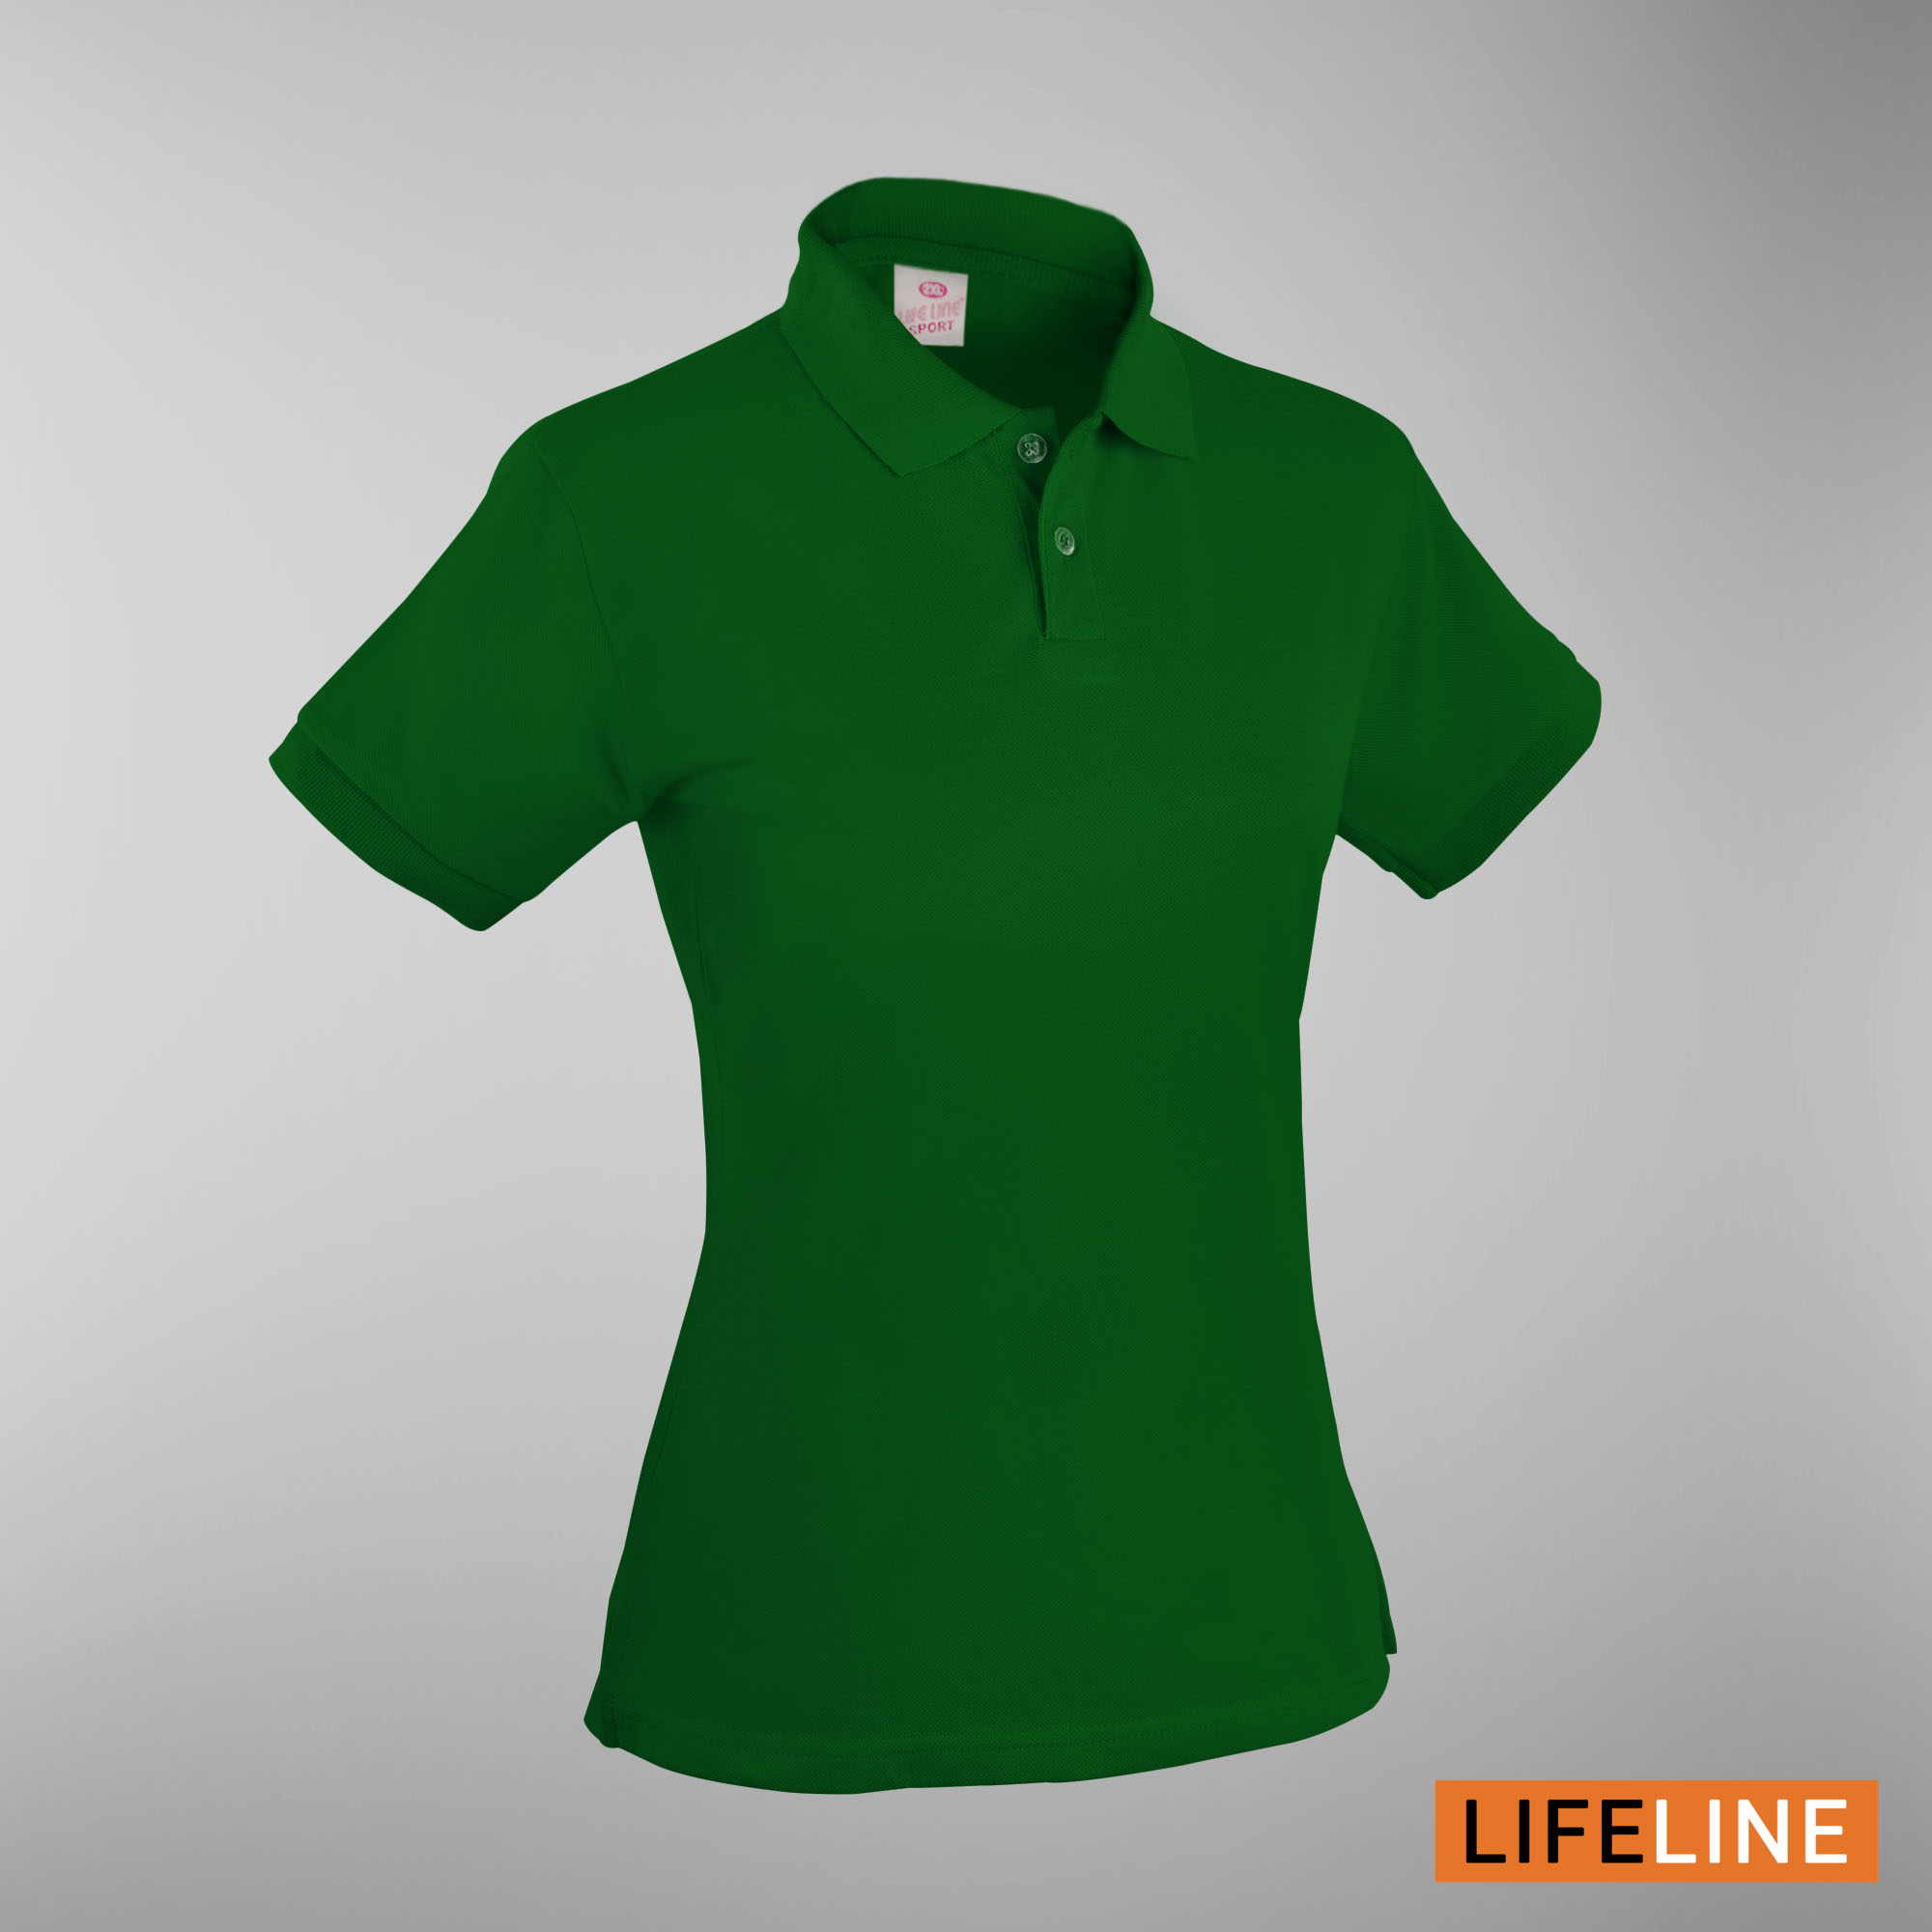 Lifeline Ladies’ Poloshirt (Emerald Green) (Petite Sizes)